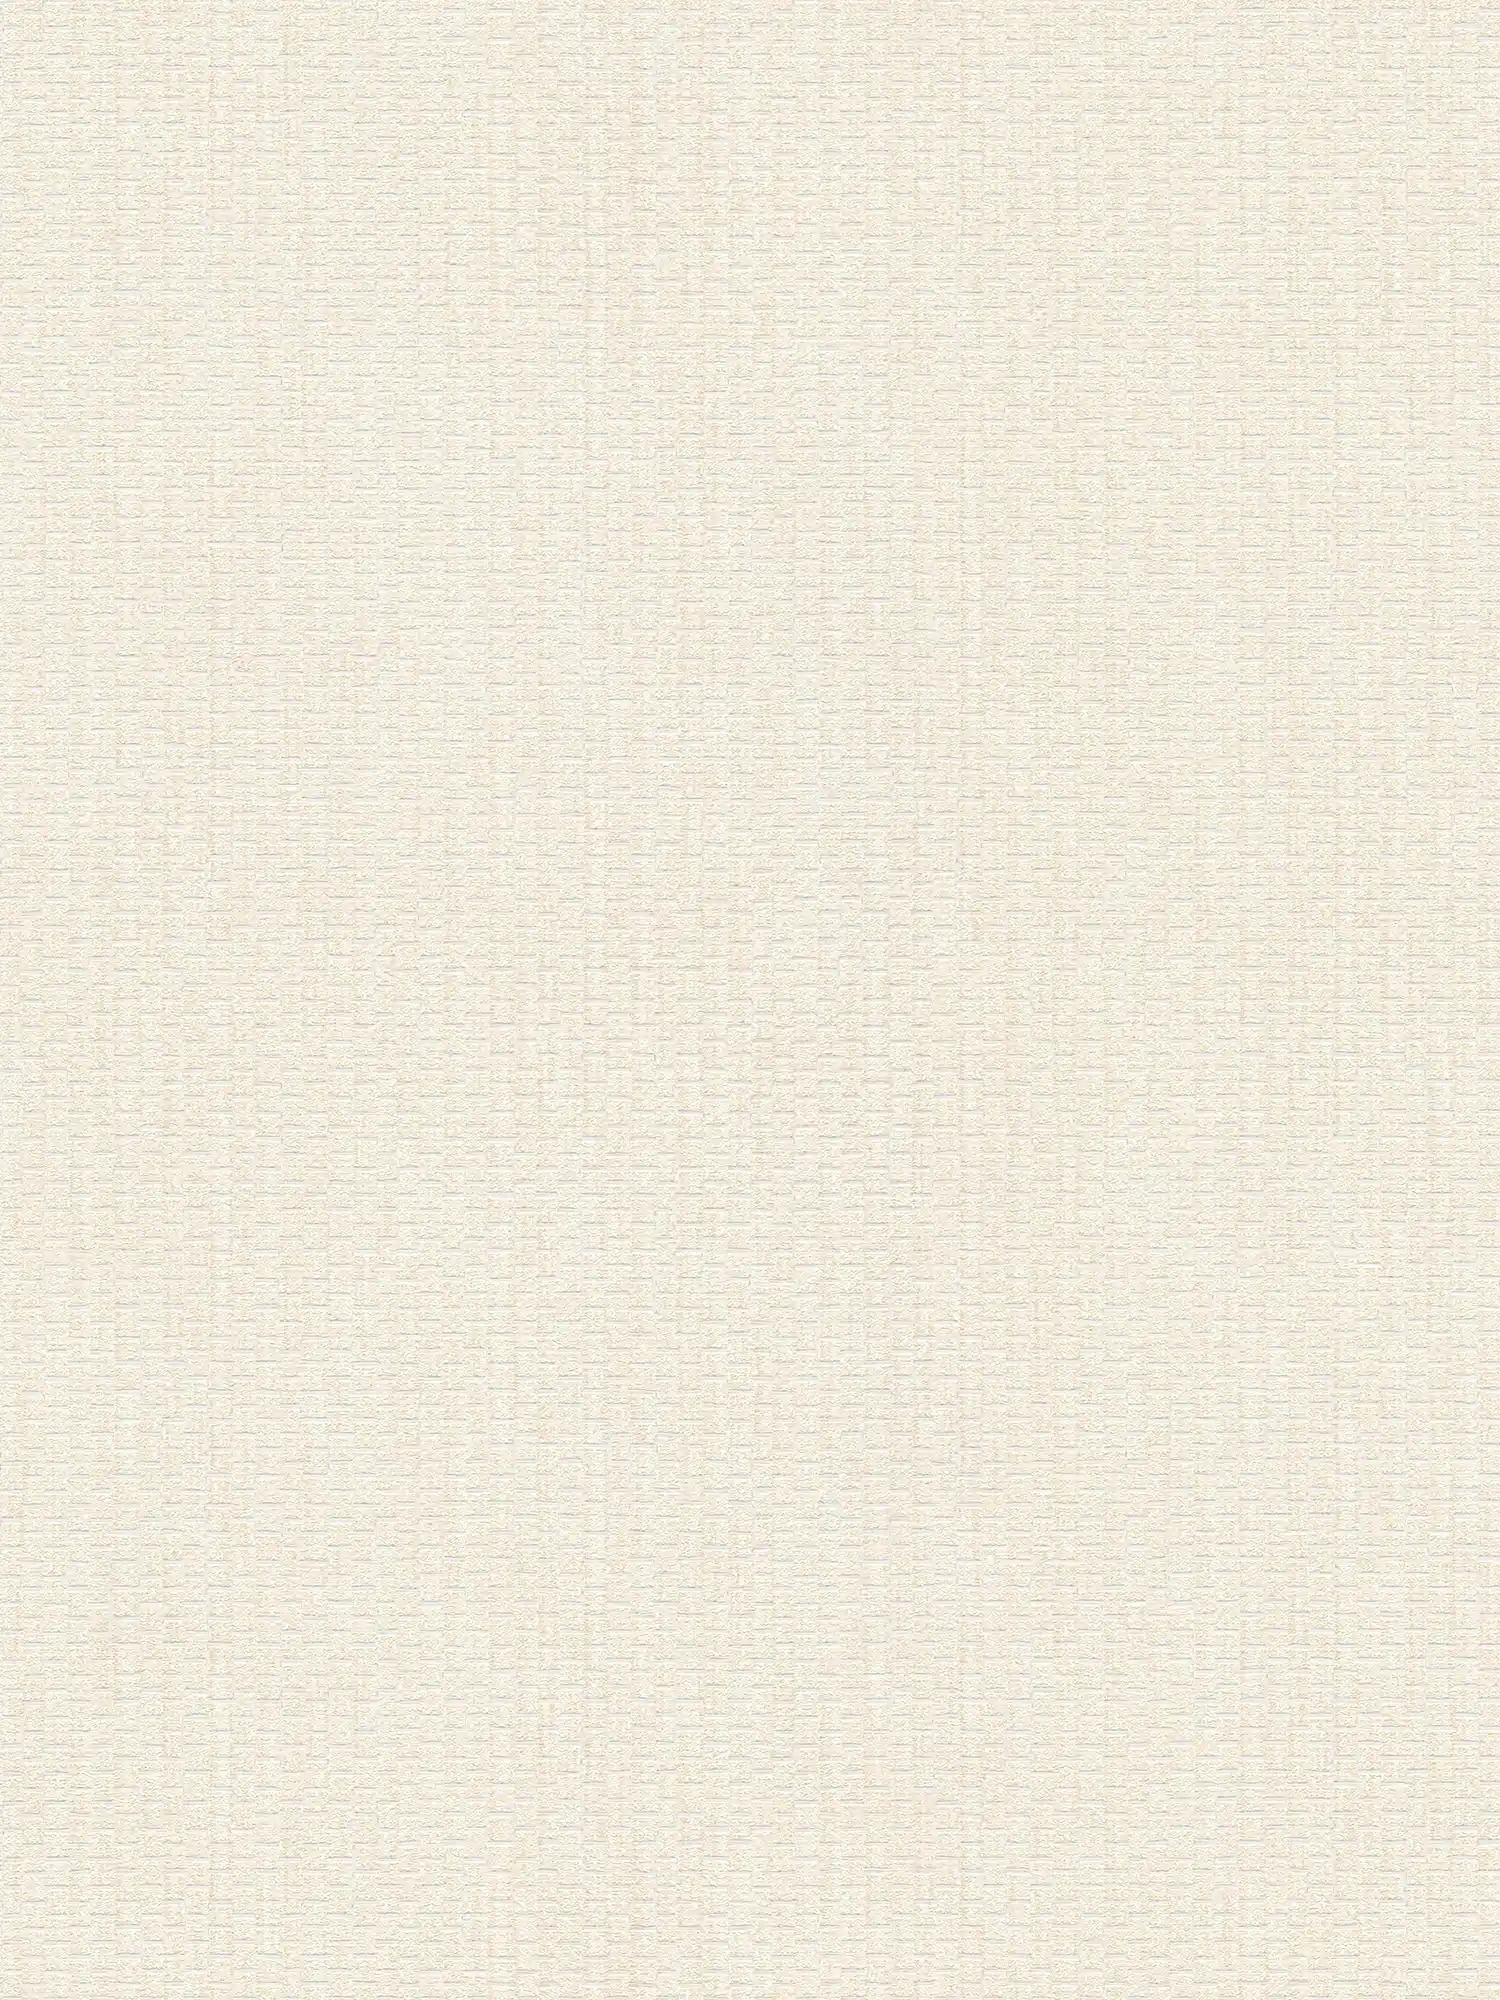 Tapete mit Bastmatten Design – Creme, Weiß
